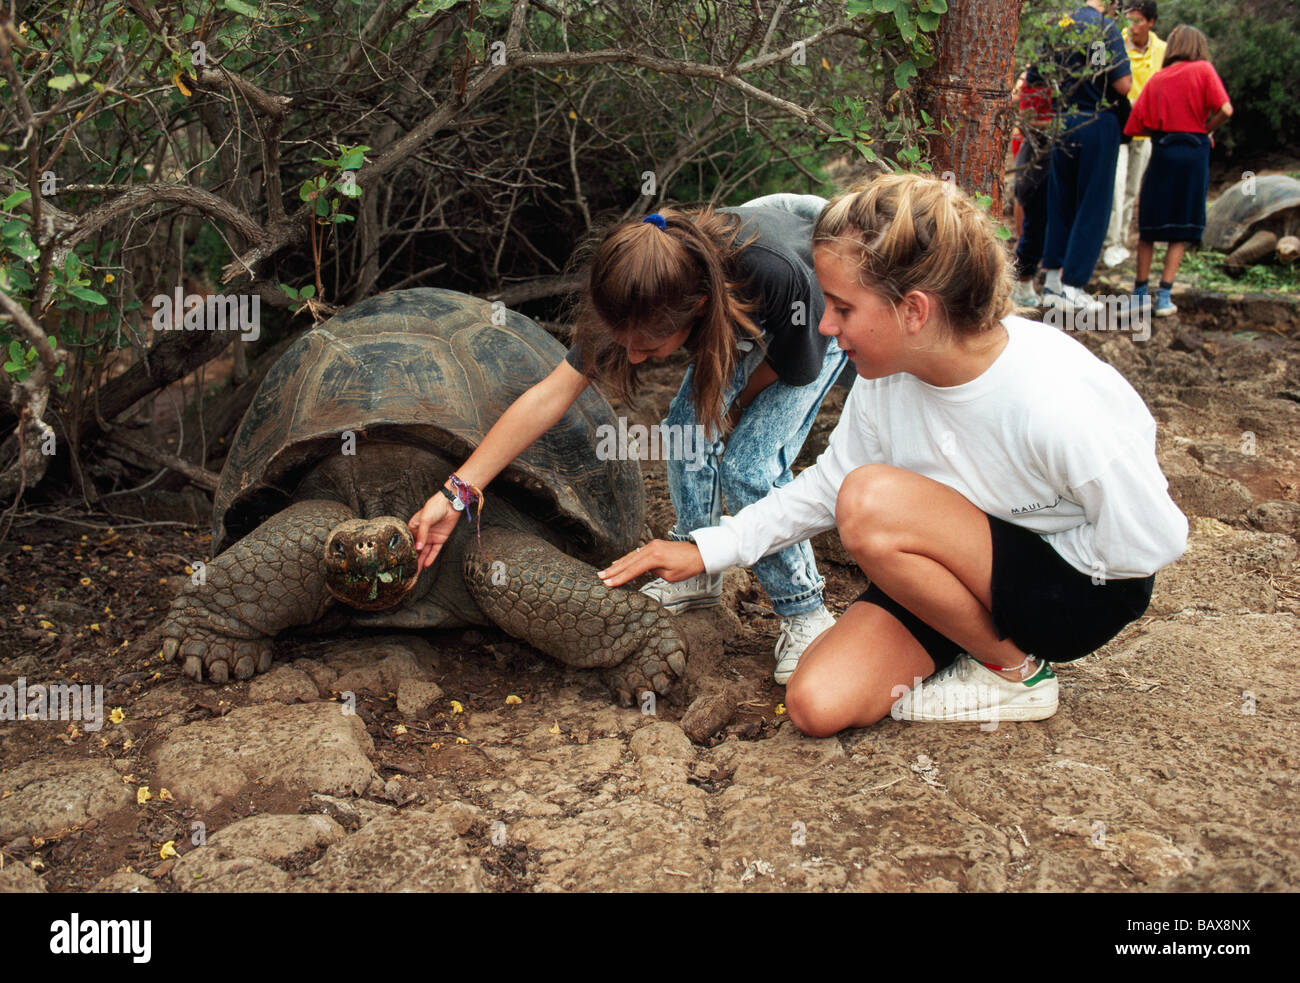 Dos muchachas jóvenes comunicando con tortugas gigantes. Foto de stock